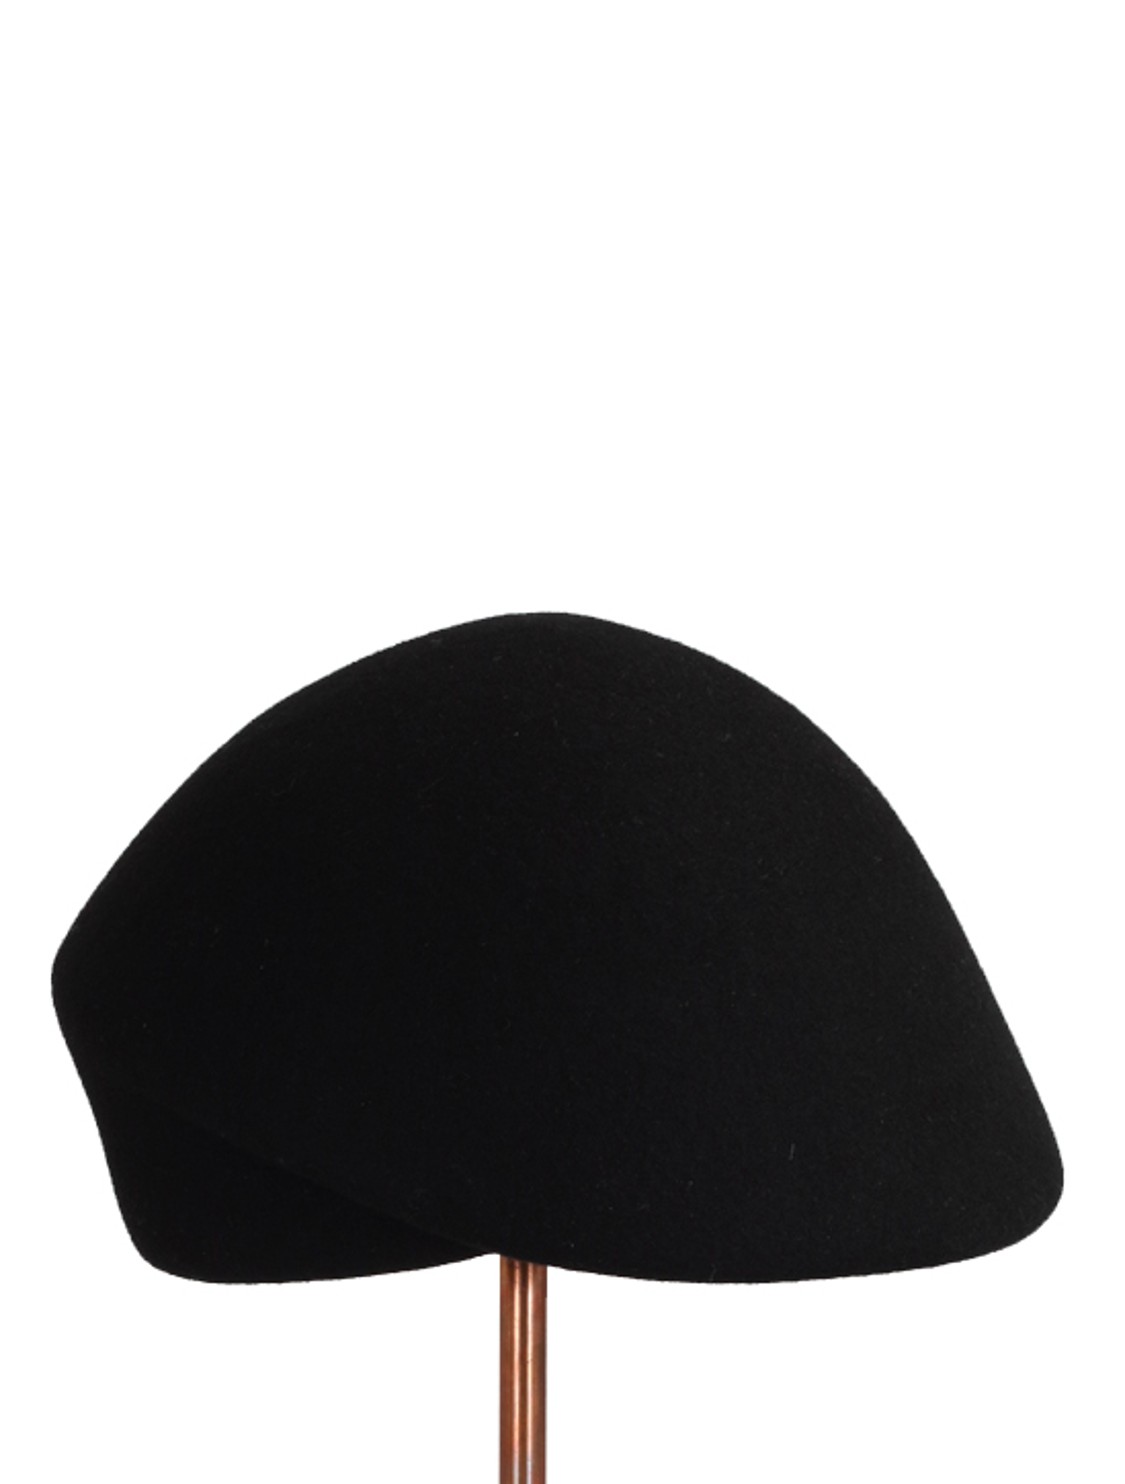 shop Flapper Saldi Accessori: Cappello Flapper, modello Guendalina, berretto in lana nera.

Composizione: 100% lana. number 1541